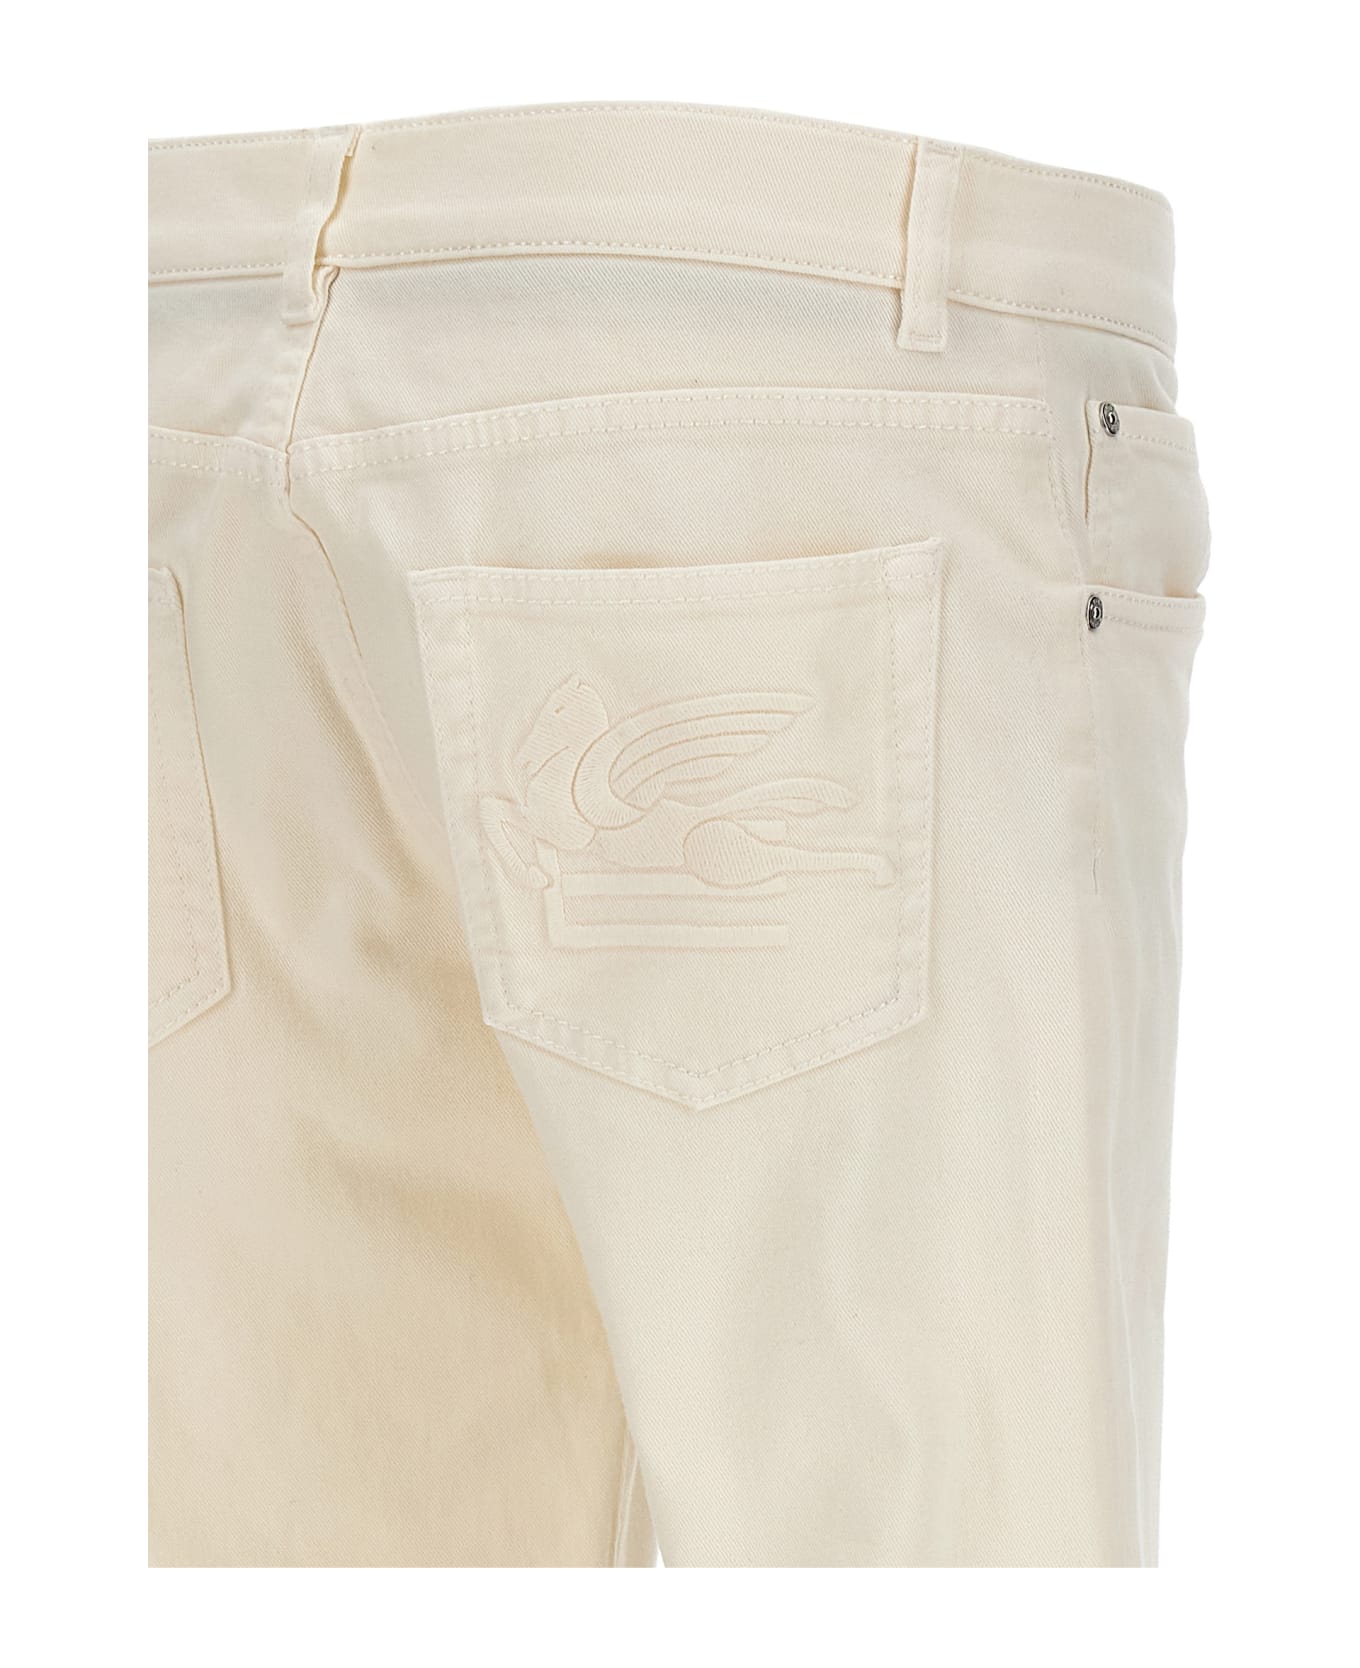 Etro Tone-on-tone Logo Jeans - White